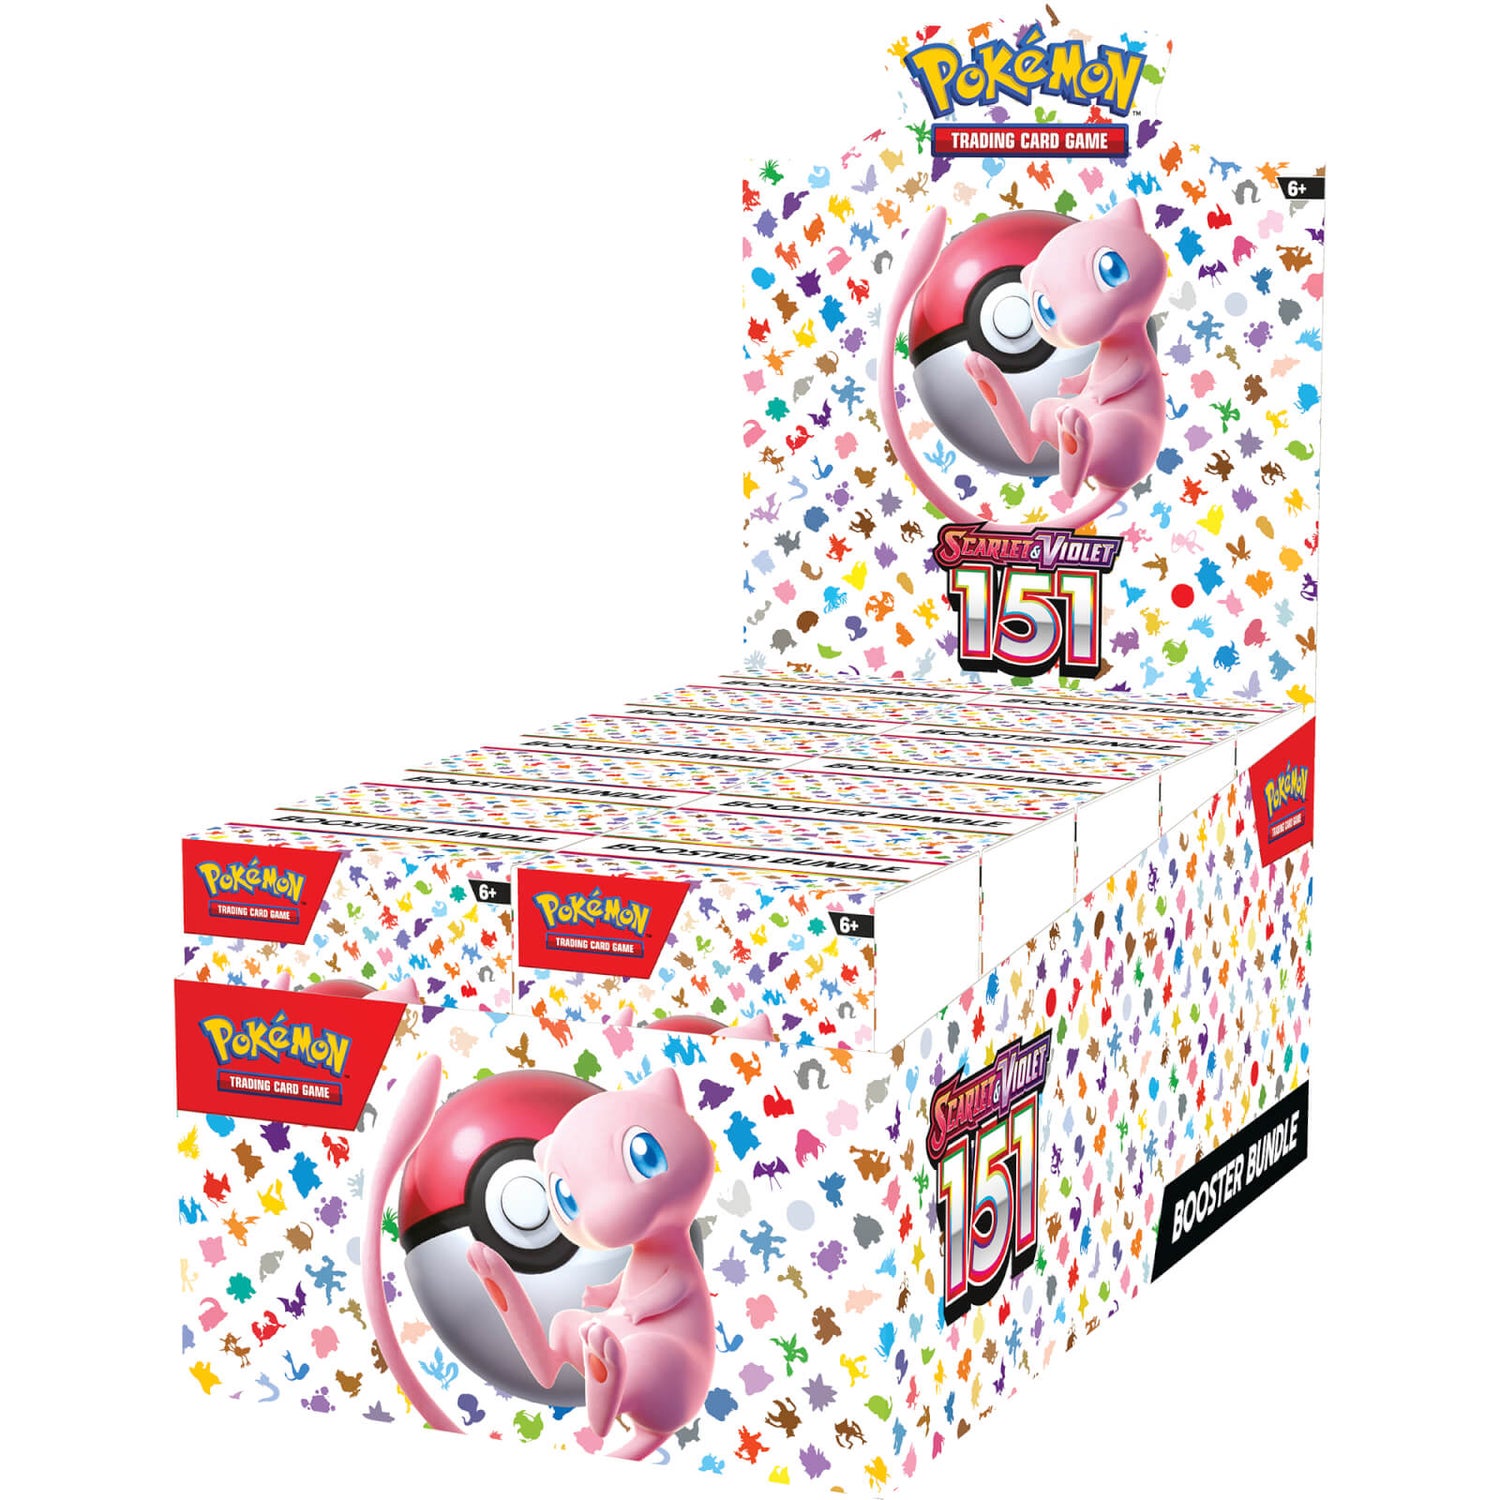 Pokémon TCG: Scarlet & Violet: Pokémon 151 - Booster Box